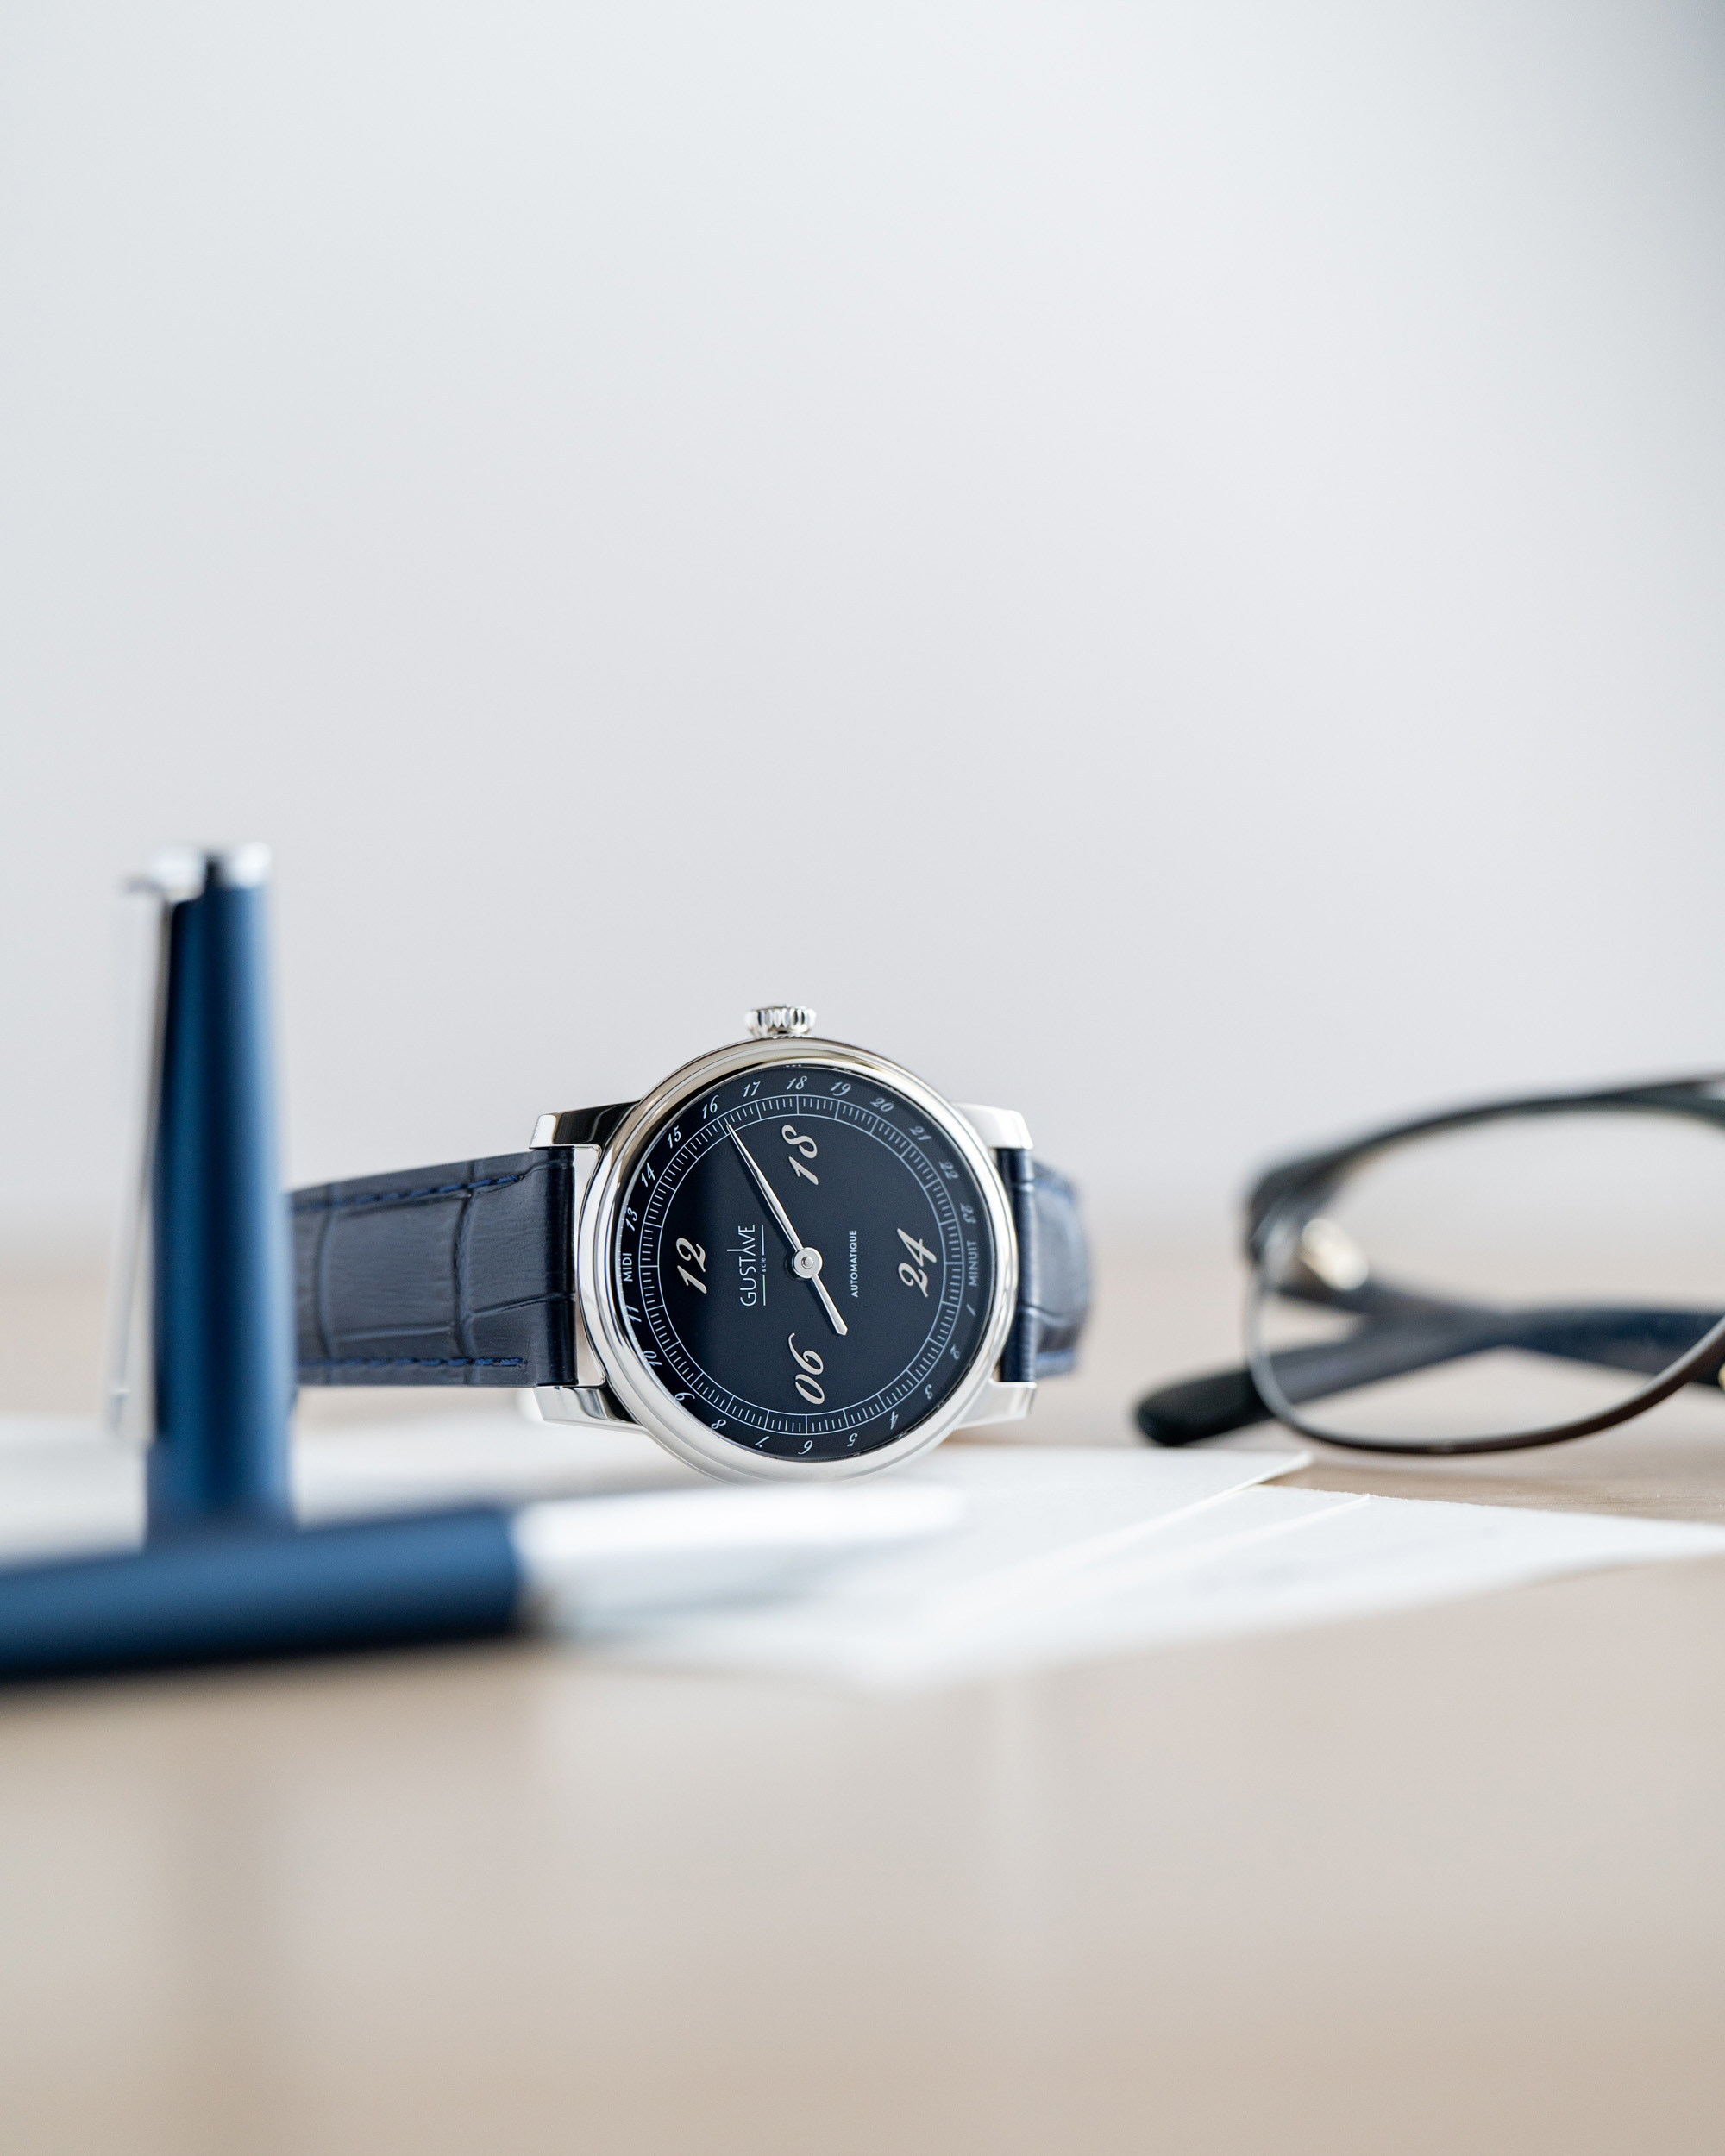 Gustave & Cie. готовится к выпуску коллекции часов с автоподзаводом Paul 24H